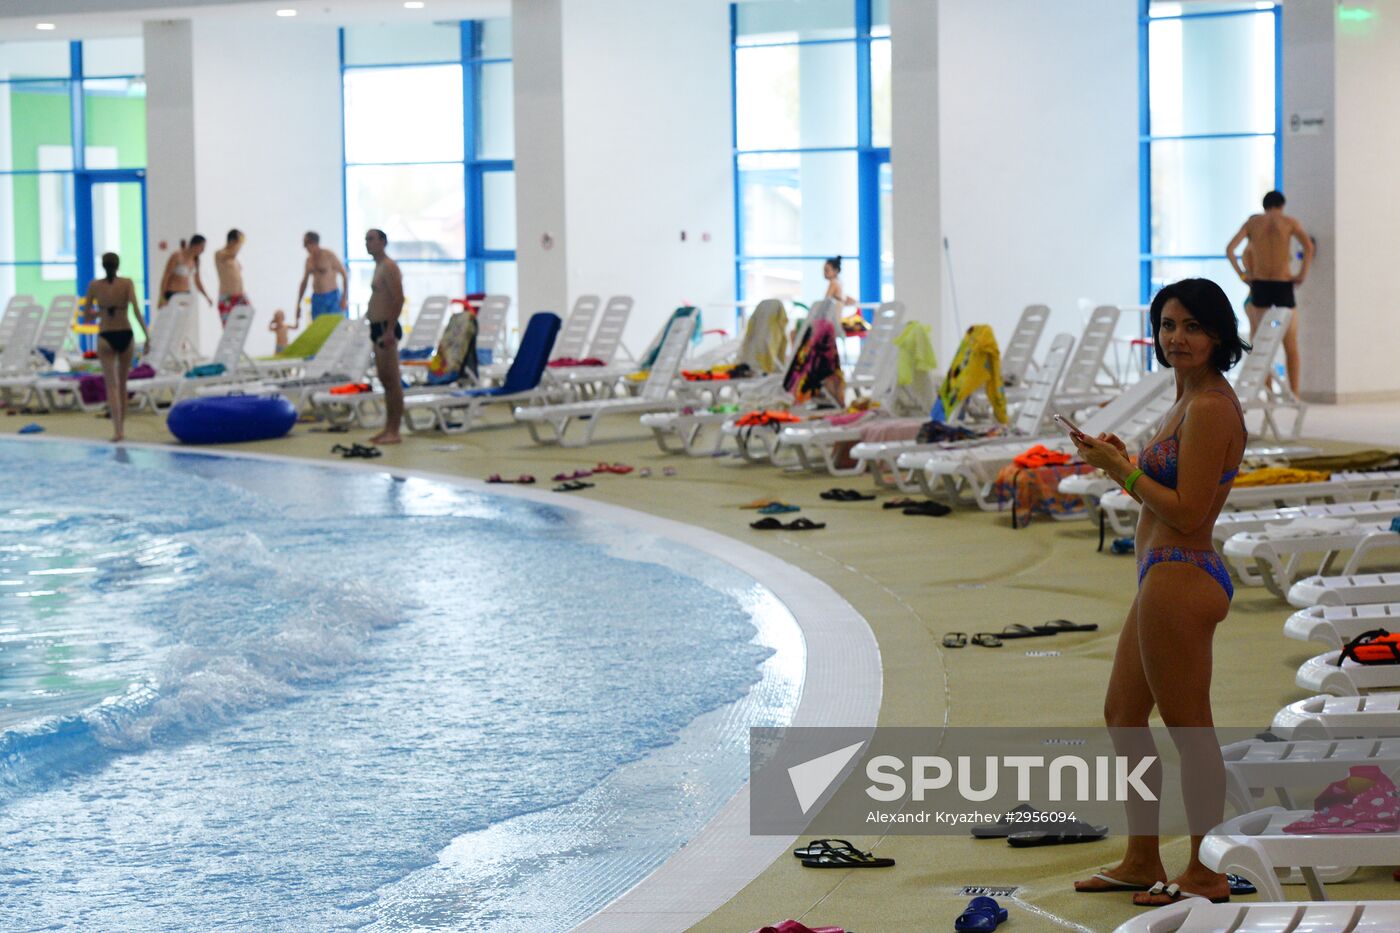 Russia's largest indoor water park opens in Novosibirsk